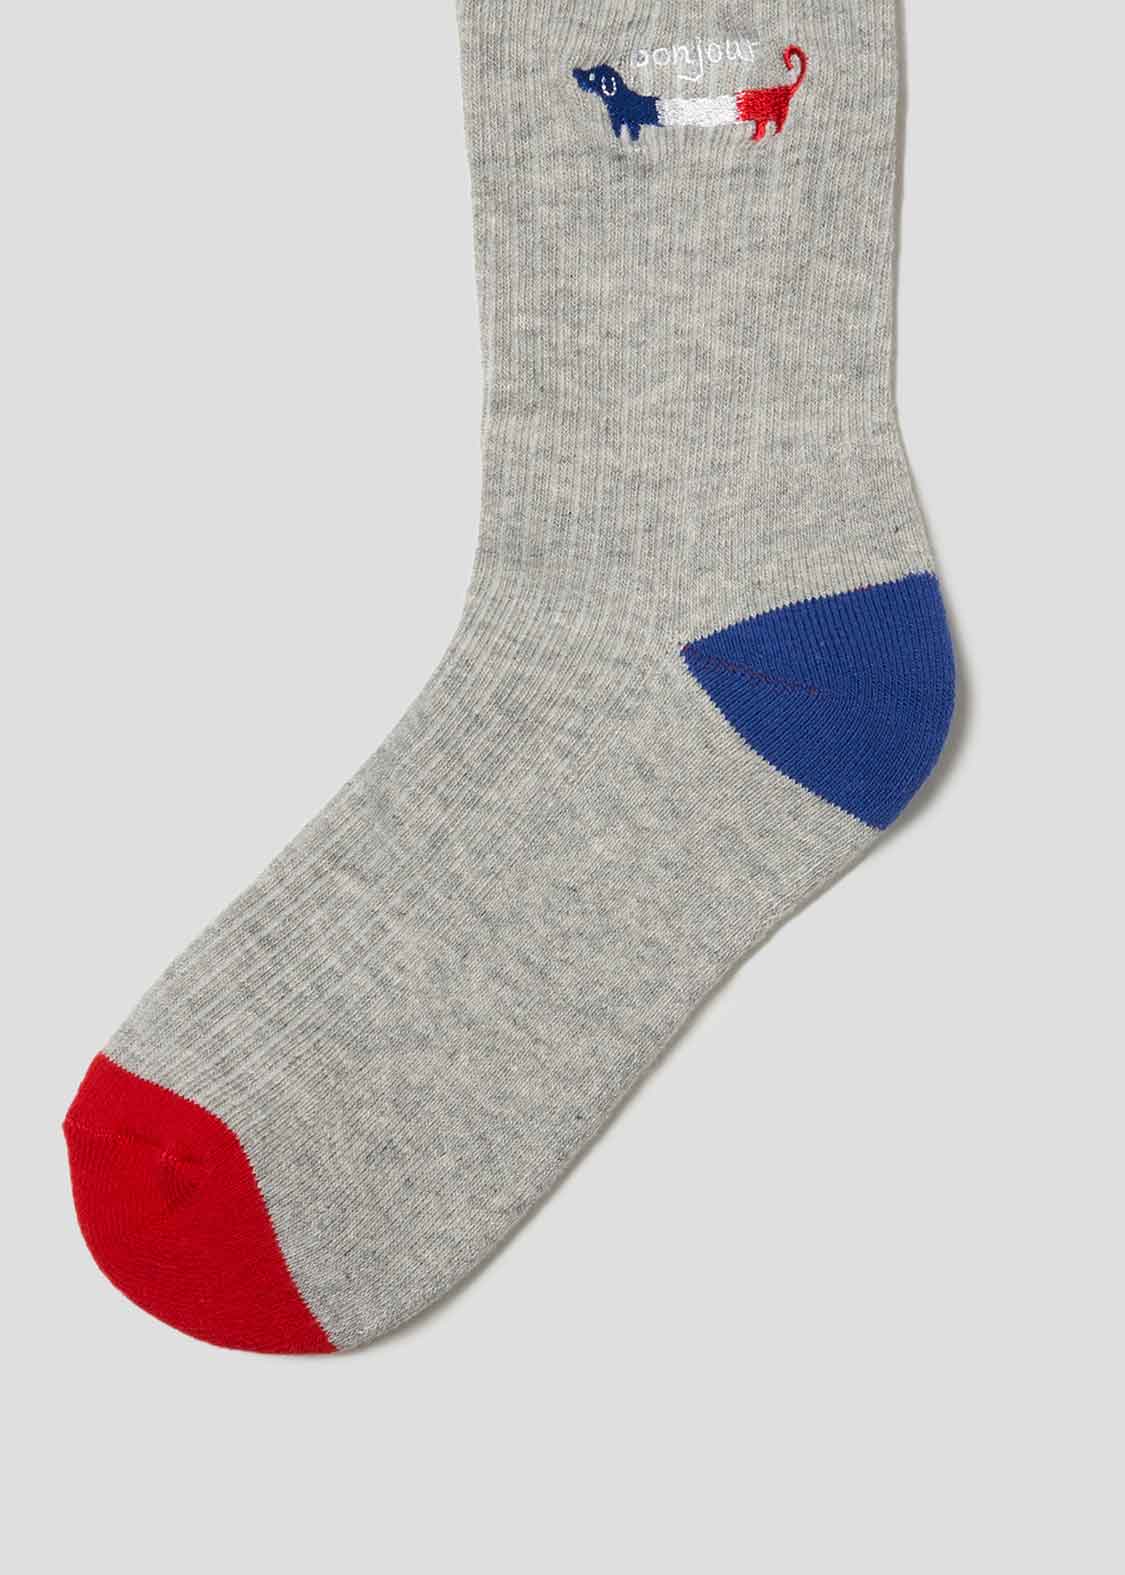 Middle Socks (Nagasugiru Inu Bonjour France)